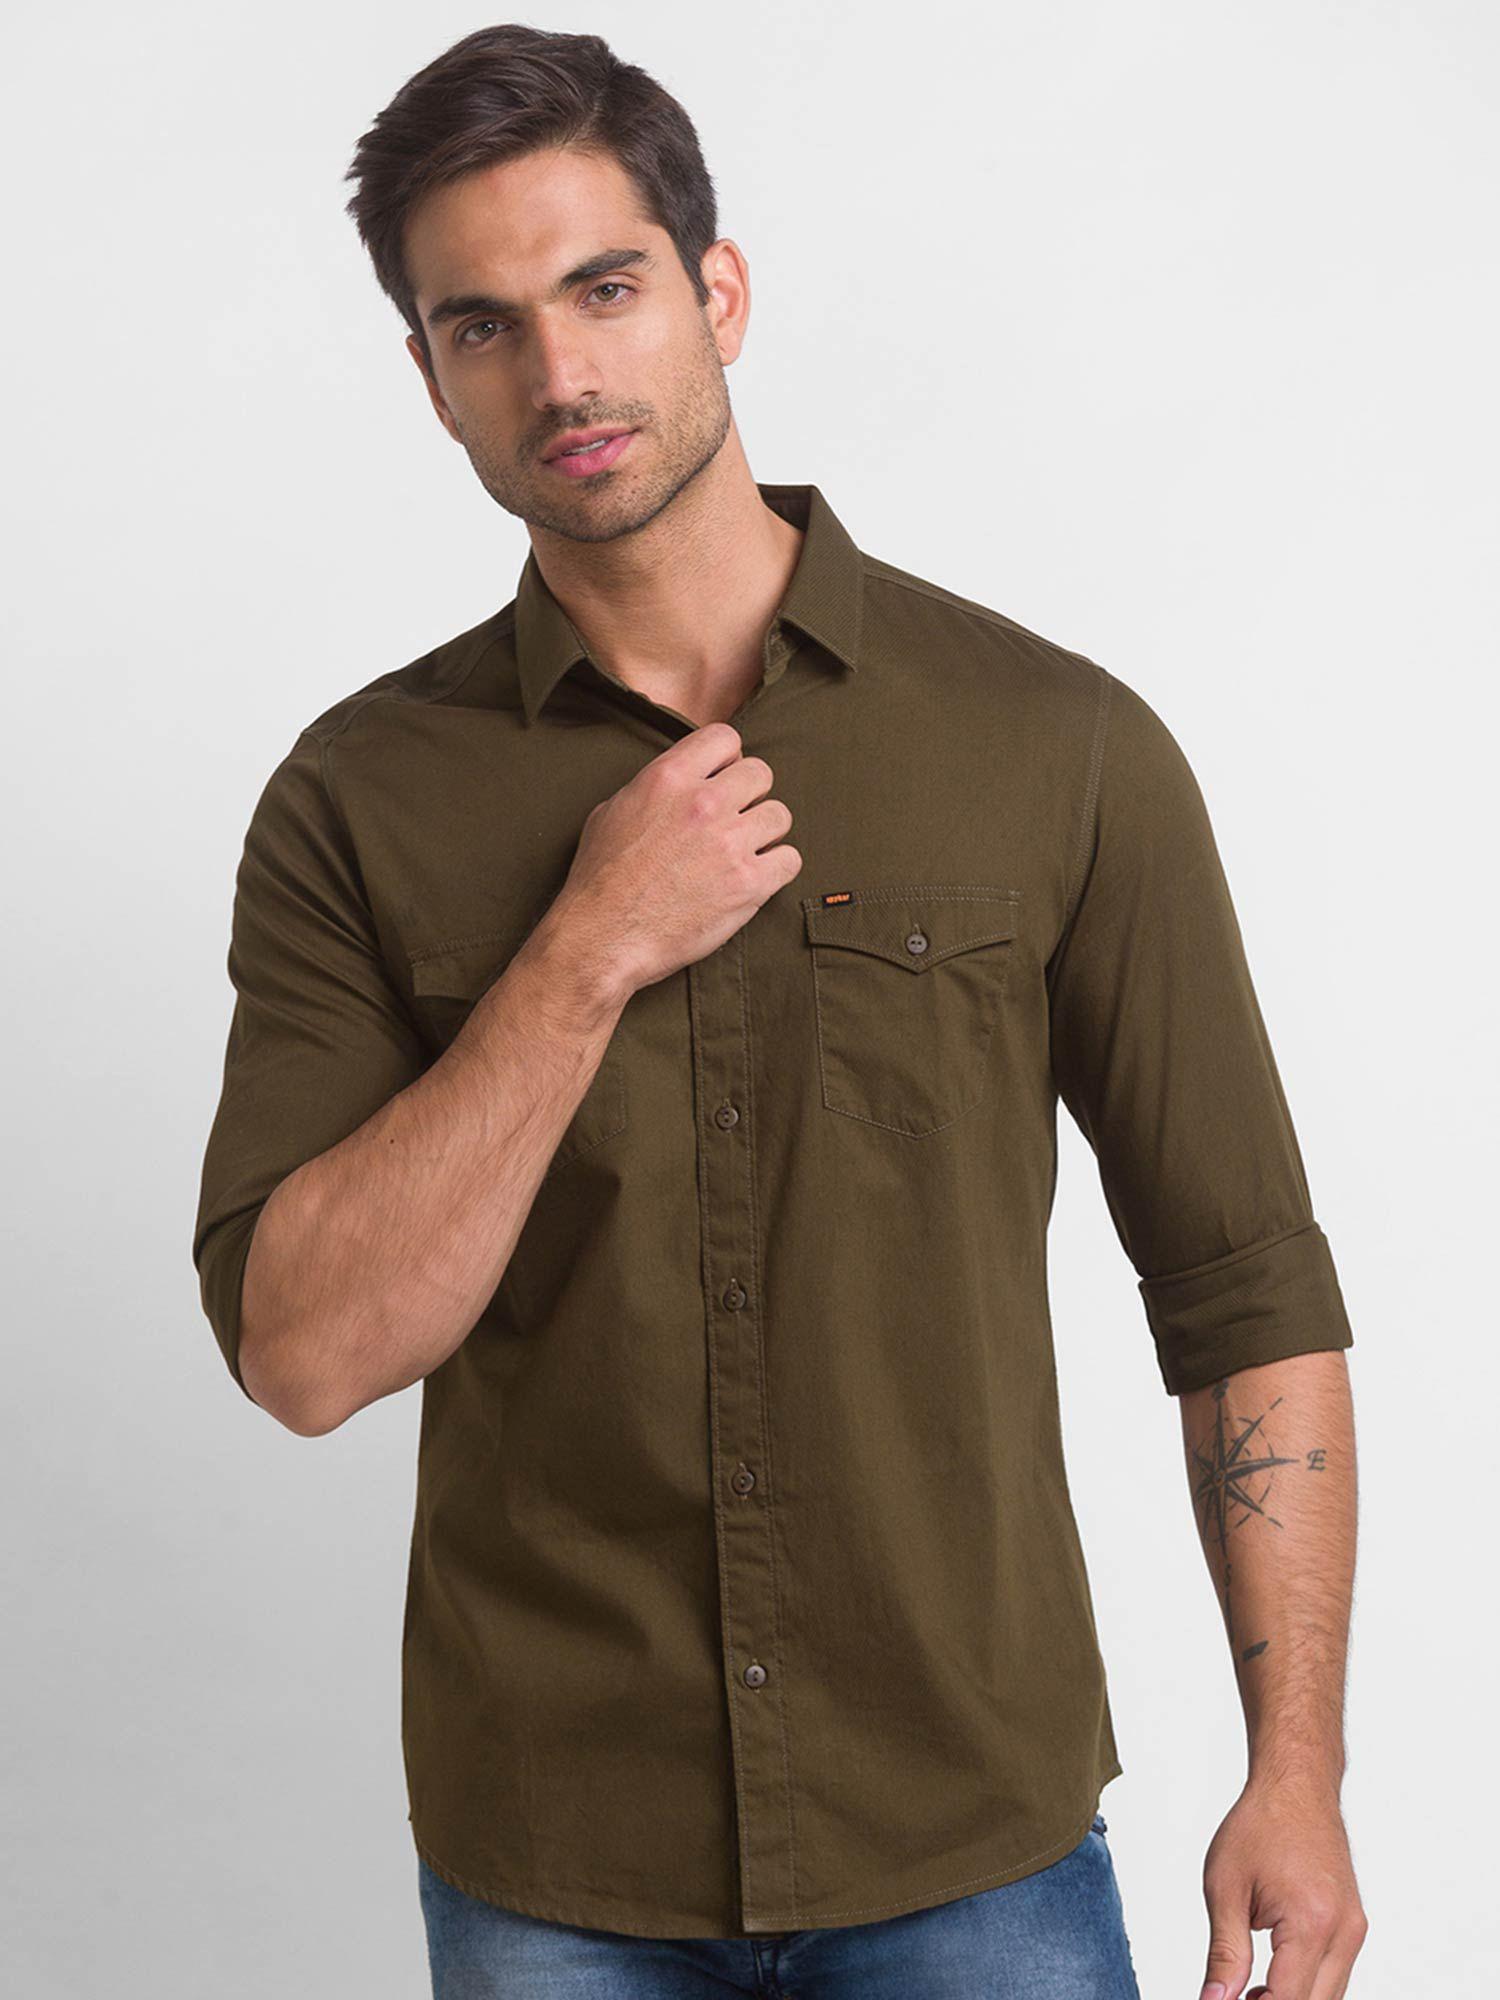 military-green-cotton-full-sleeve-plain-shirt-for-men